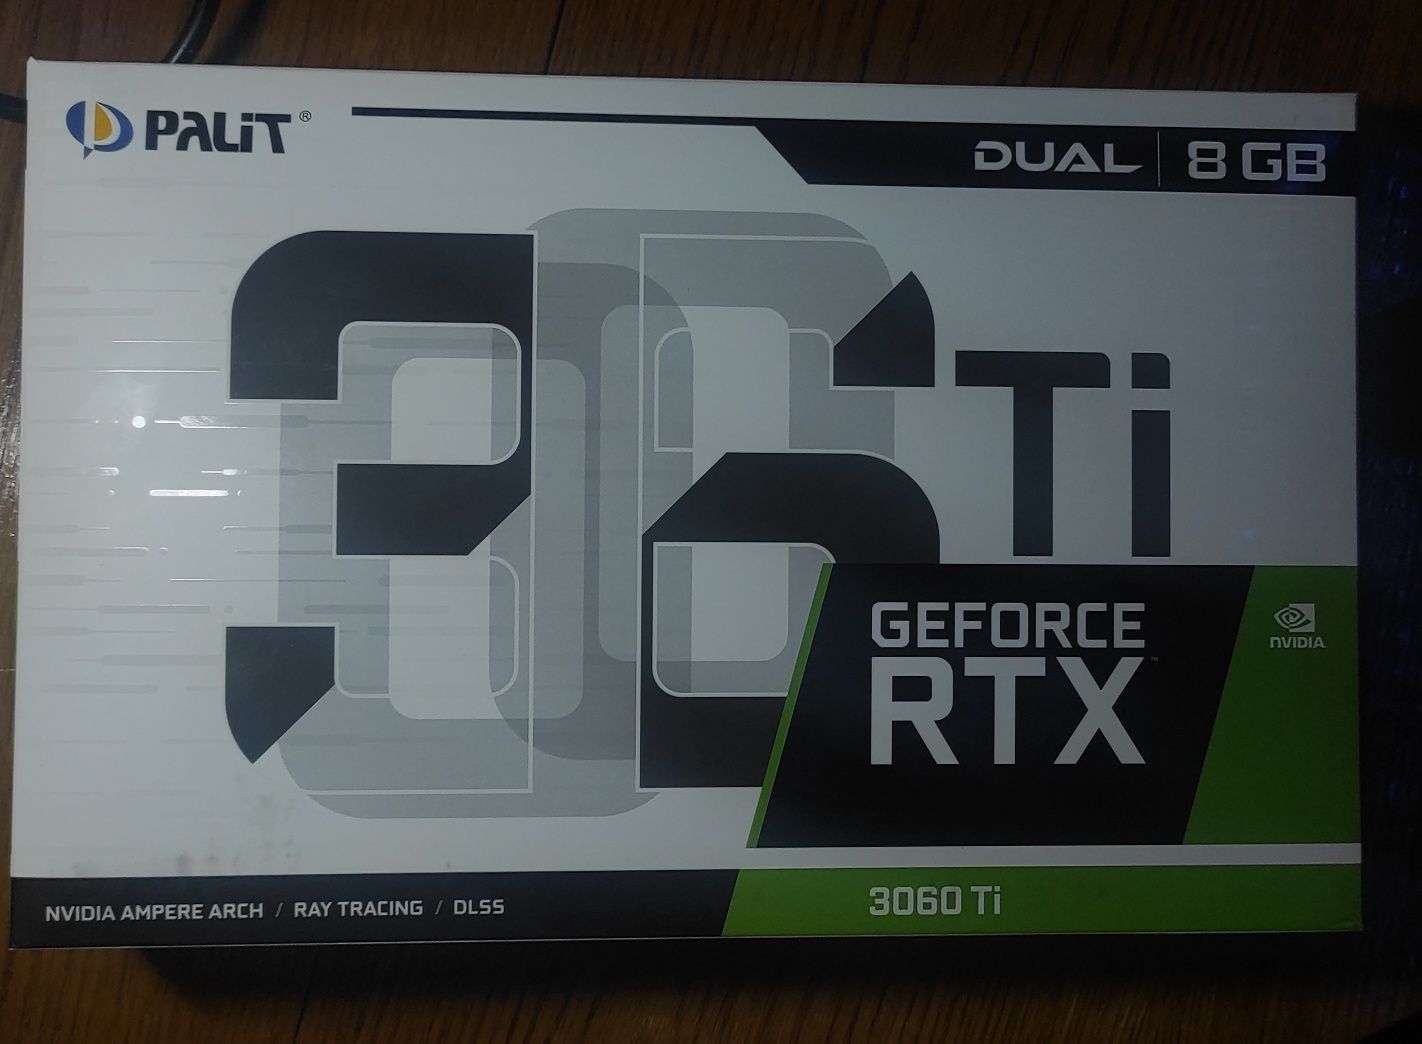 Palit RTX 3060 TI Dual LHR 8GB GDDR6